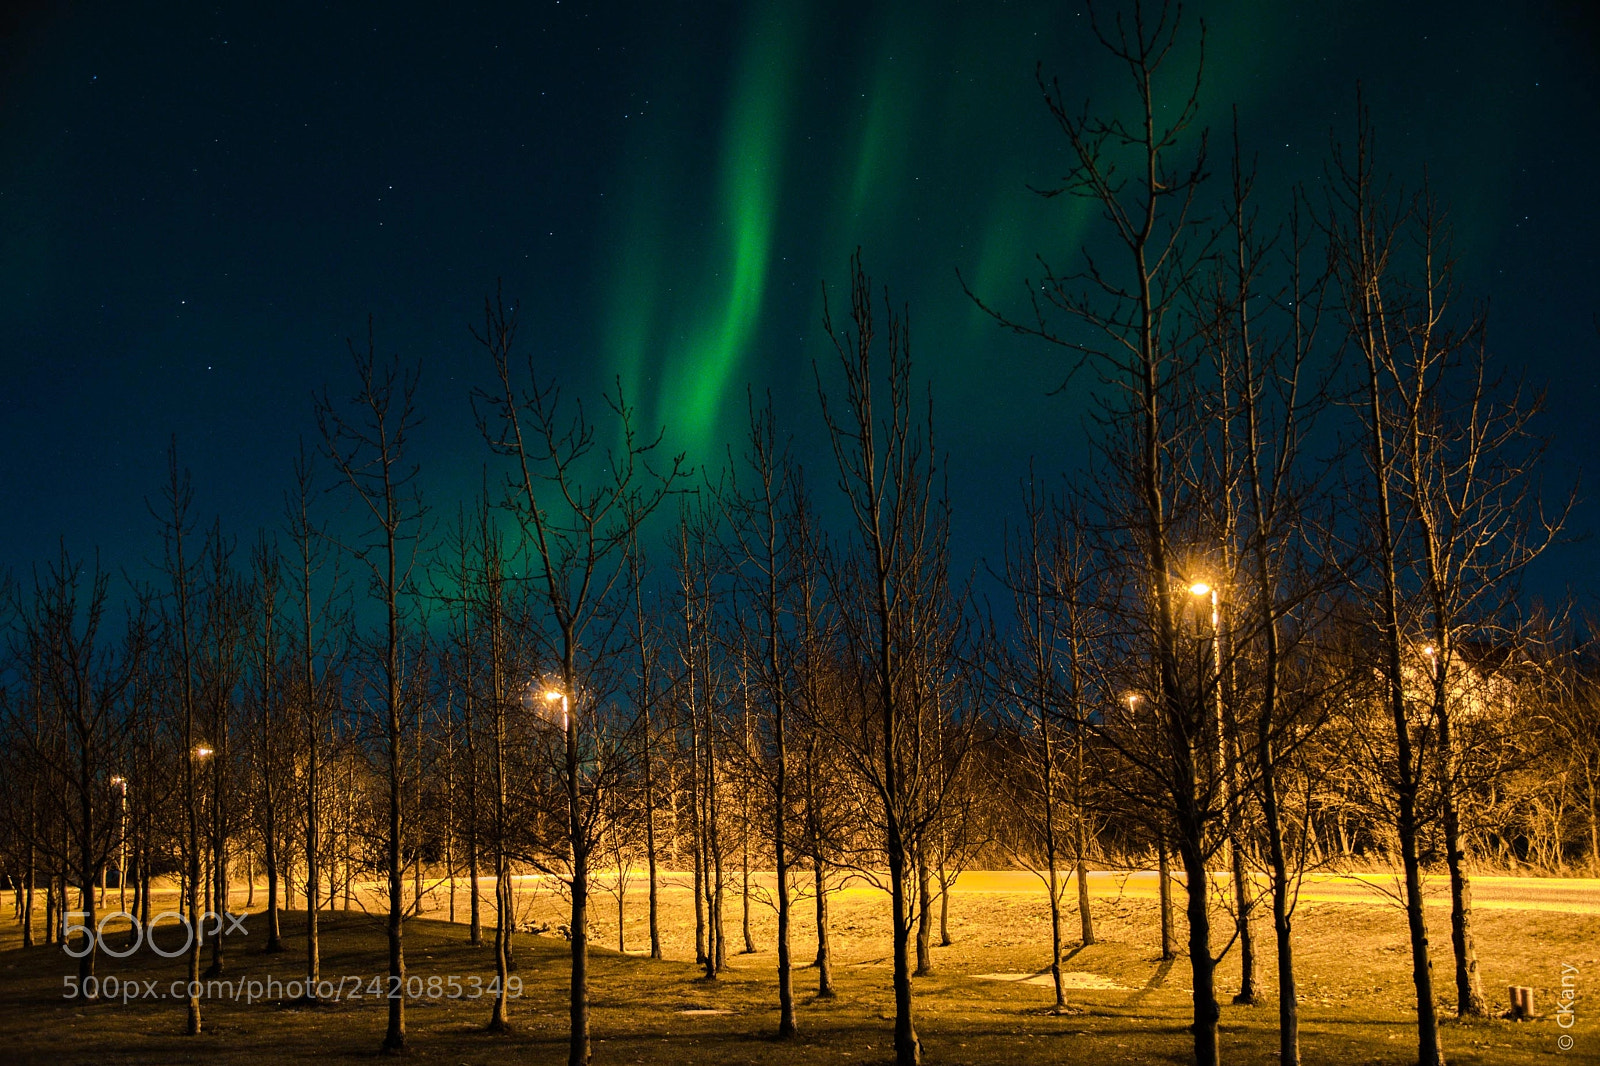 Nikon D7500 sample photo. Aurora borealis street photography